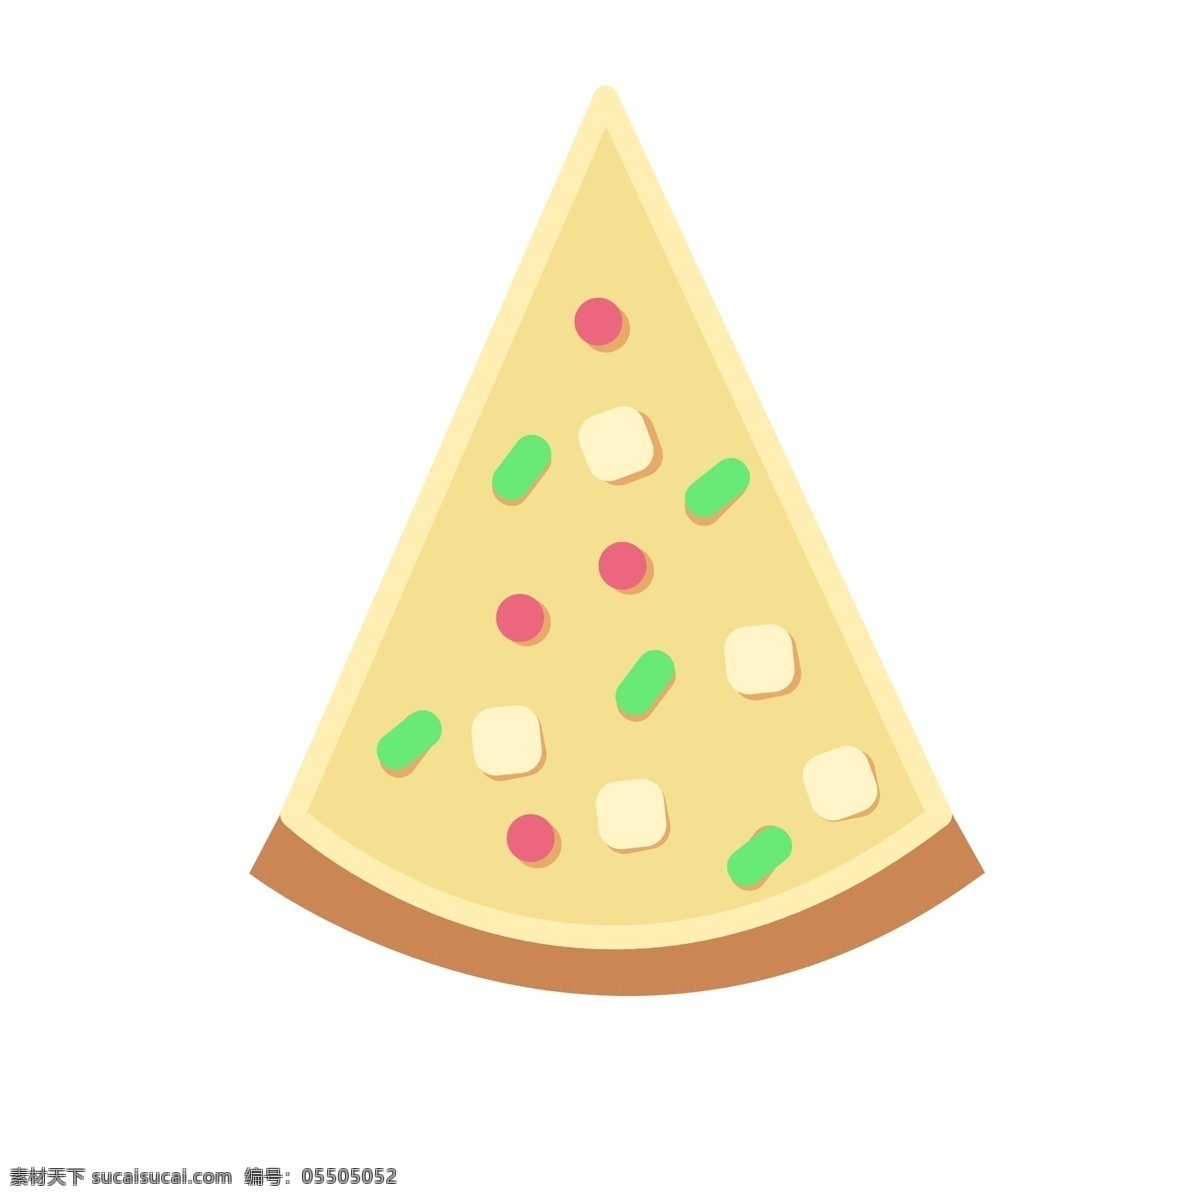 美味 食物 披萨 插画 美味的披萨 卡通插画 食物插画 食品插画 美食插画 美味食物 绿色的葱花